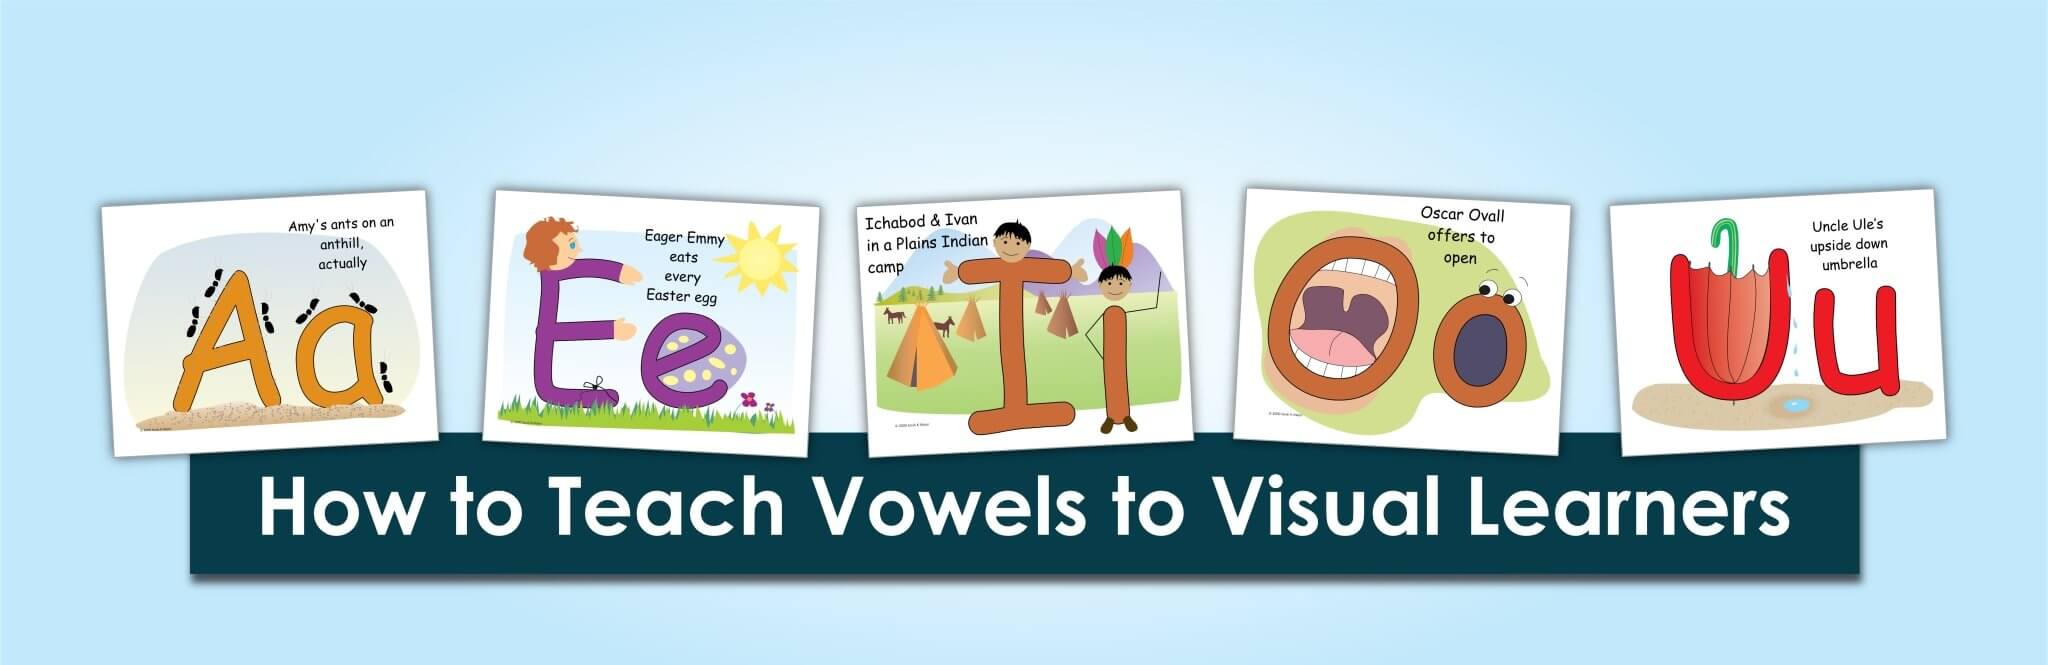 Cómo enseñar vocales a aprendices visuales